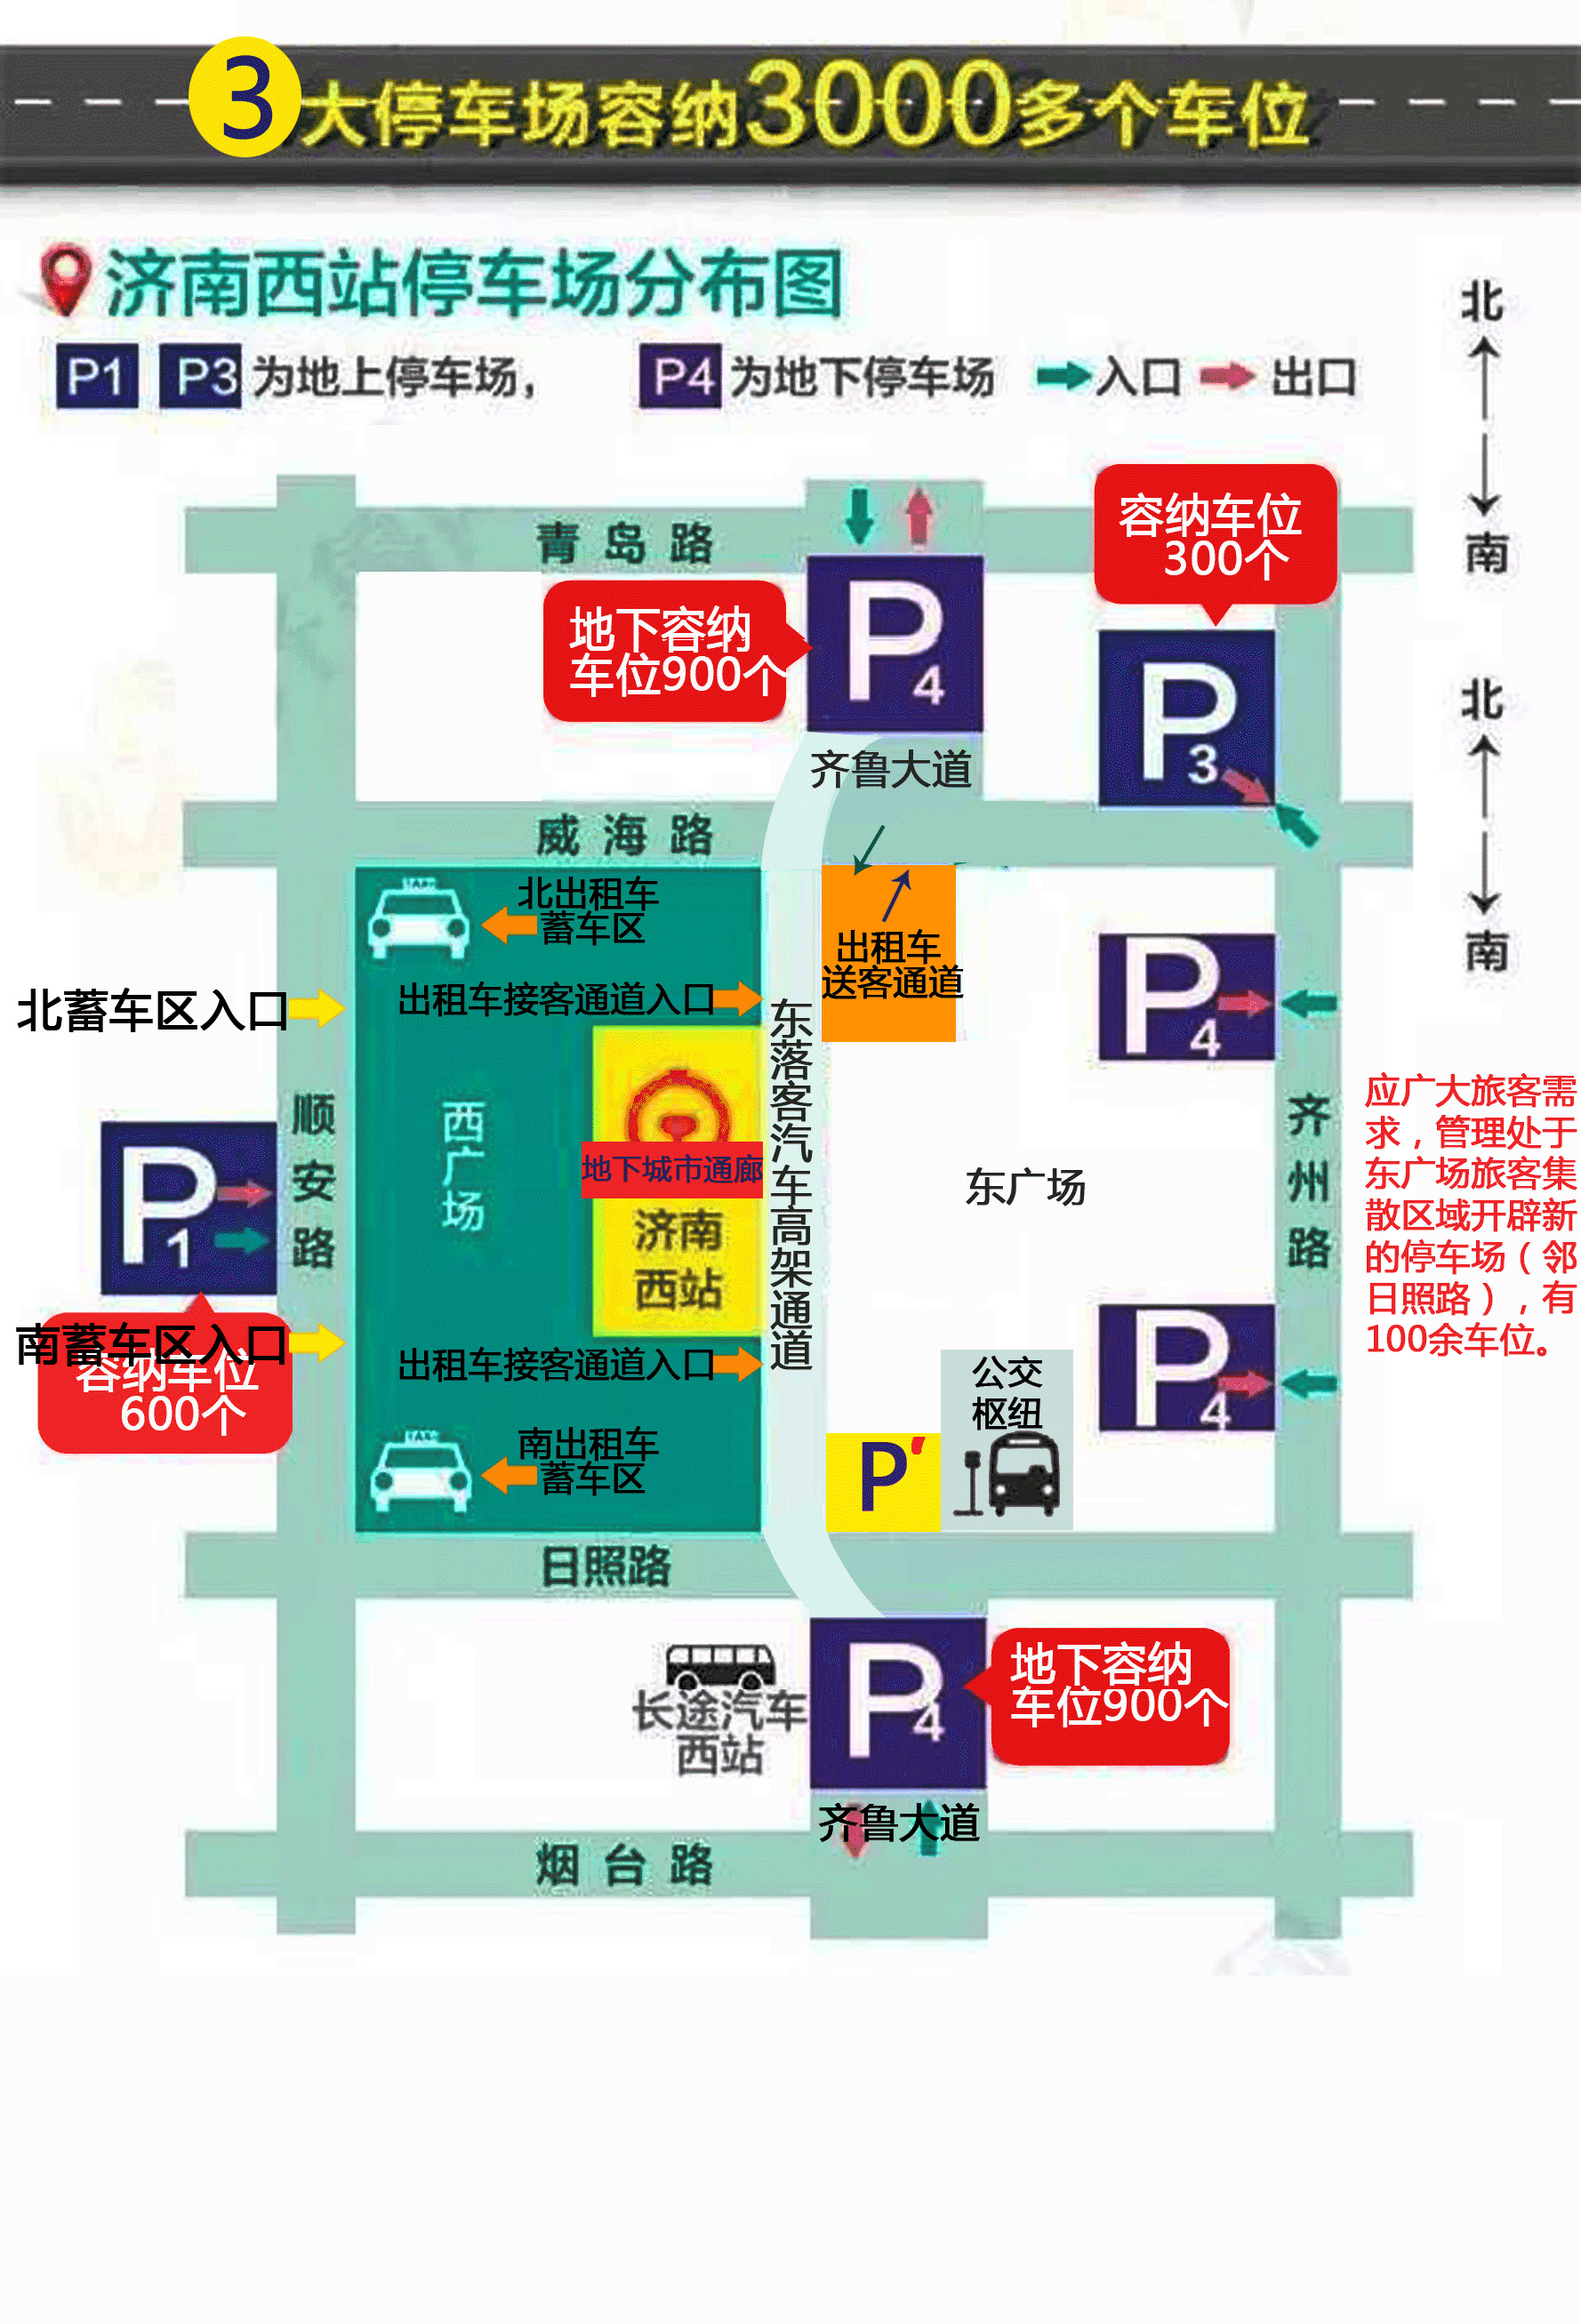 开车的朋友可先按照济南西站停车场分布图,停好车,按下图标注来到地下